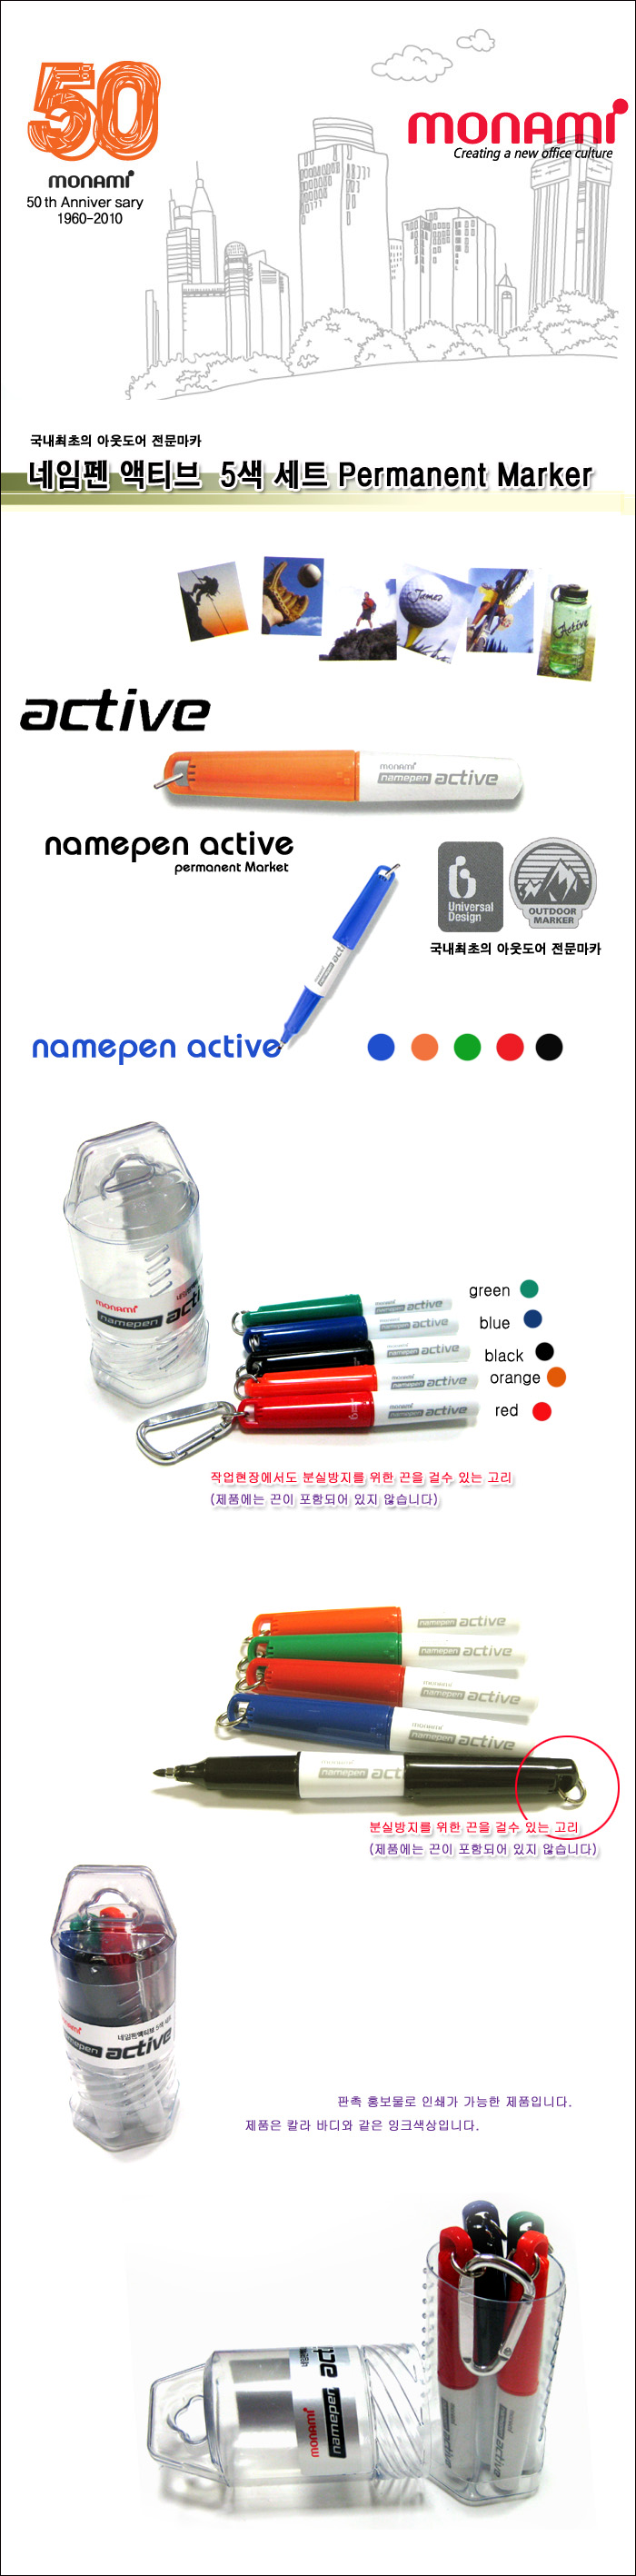 Monami / Active Namepen 5 Color Set / active / outdoor, professional marker / active name pen / Chain Pen / promotions / PR